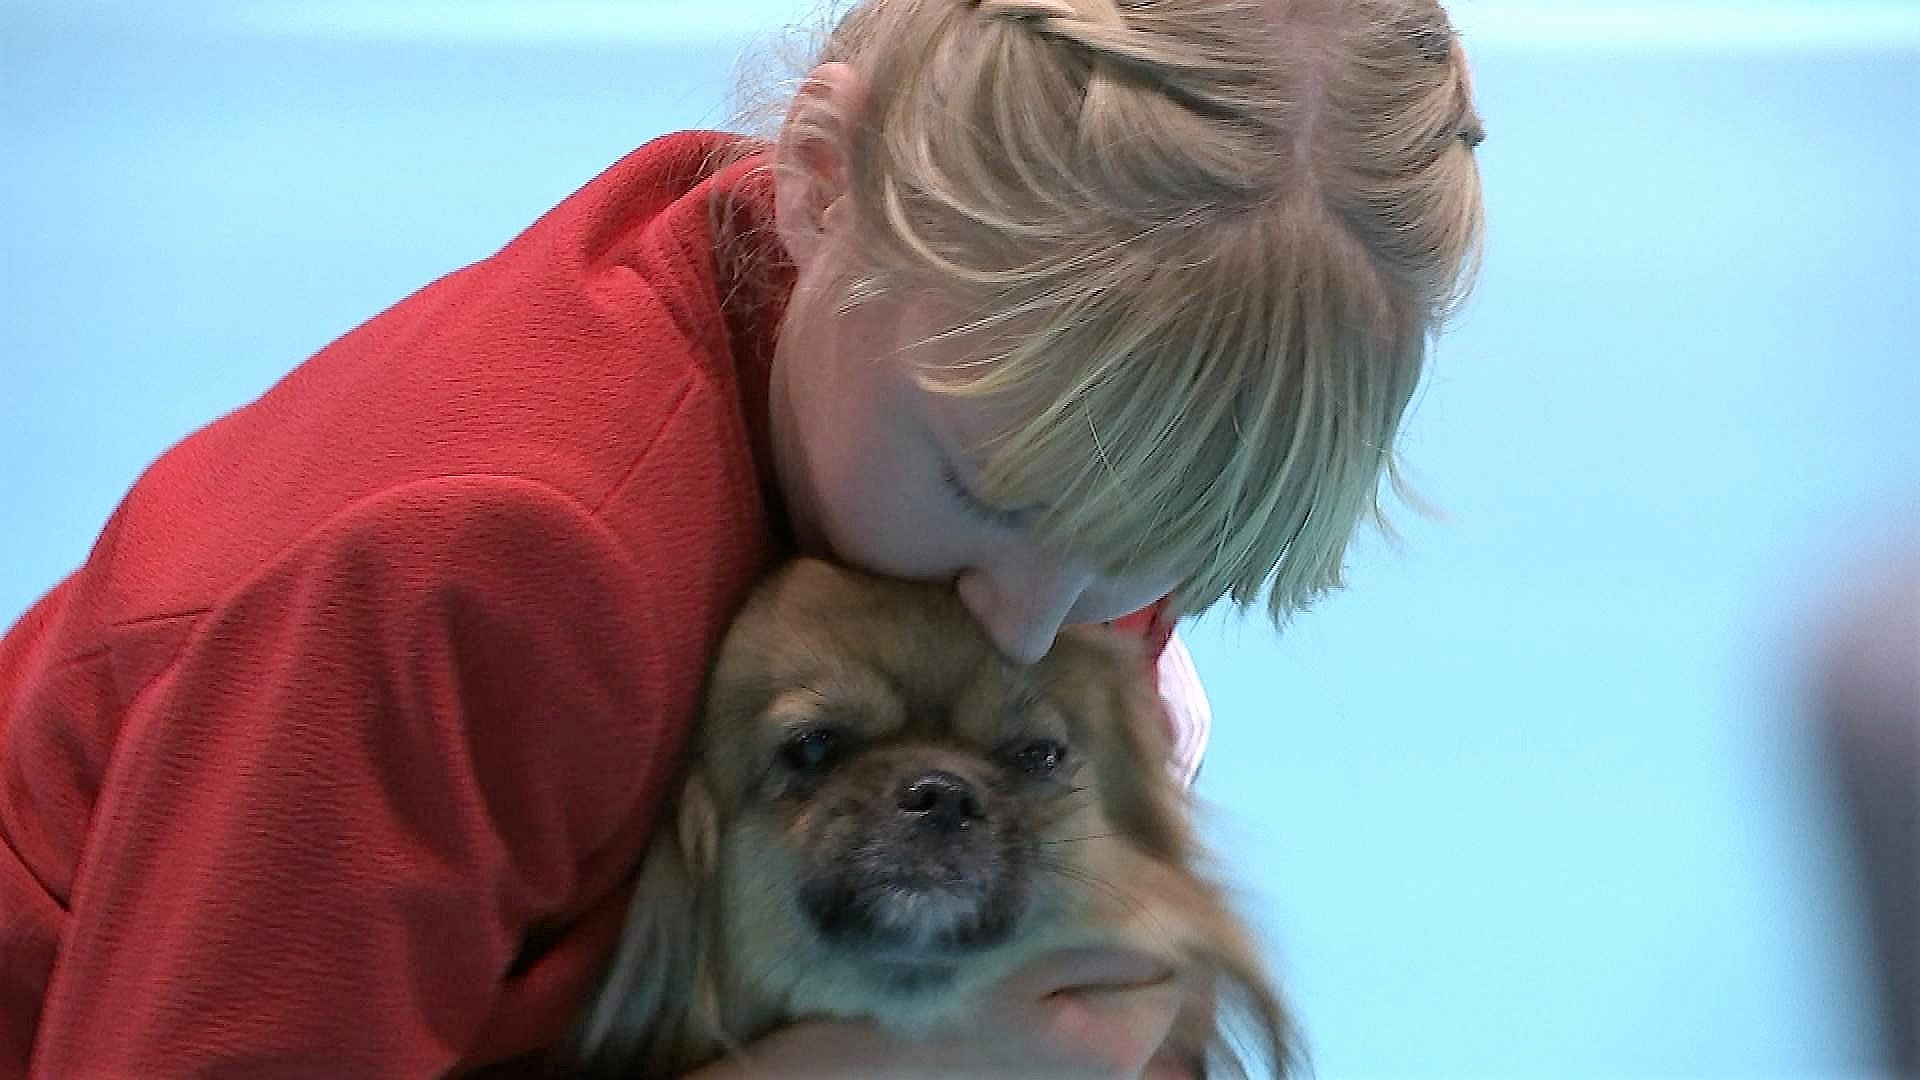 12-årige Frederikke fremviser hunde: - Det kræver meget træning | TV